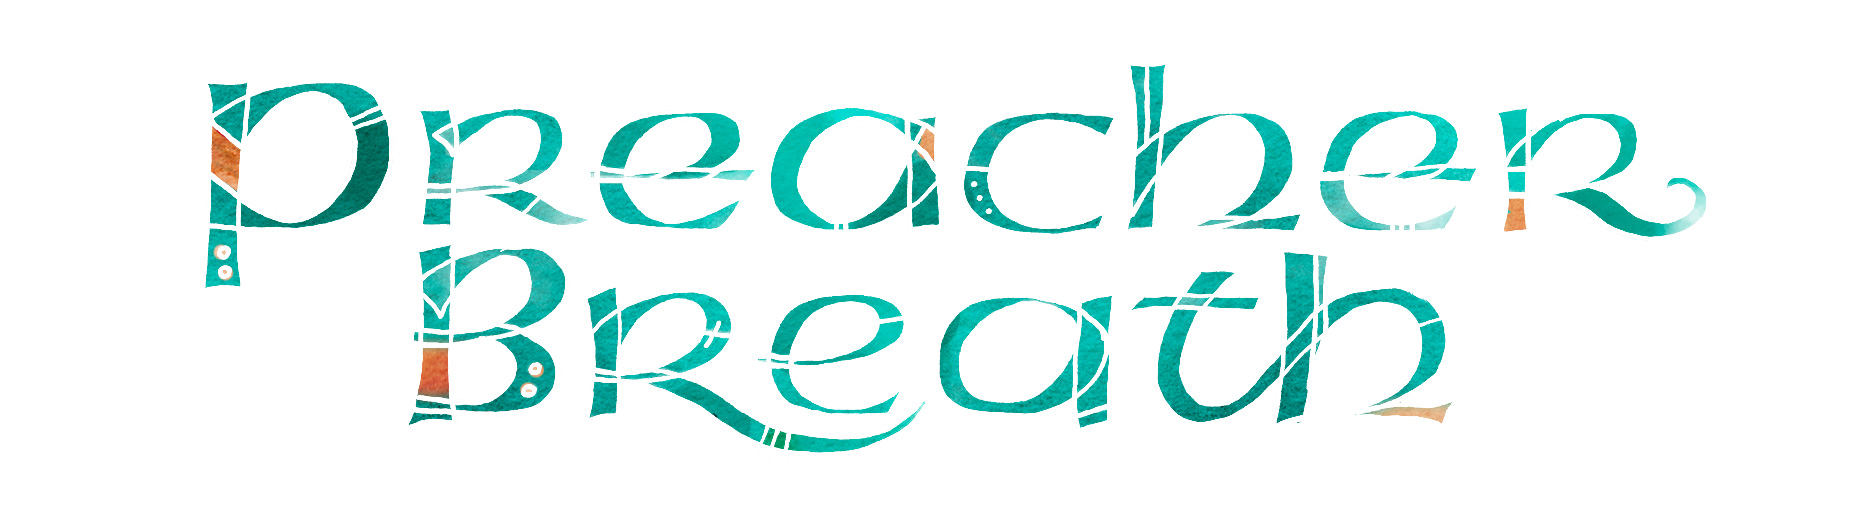 SH_PreacherBreath-Front-aRGB-010515c-FinalTitle